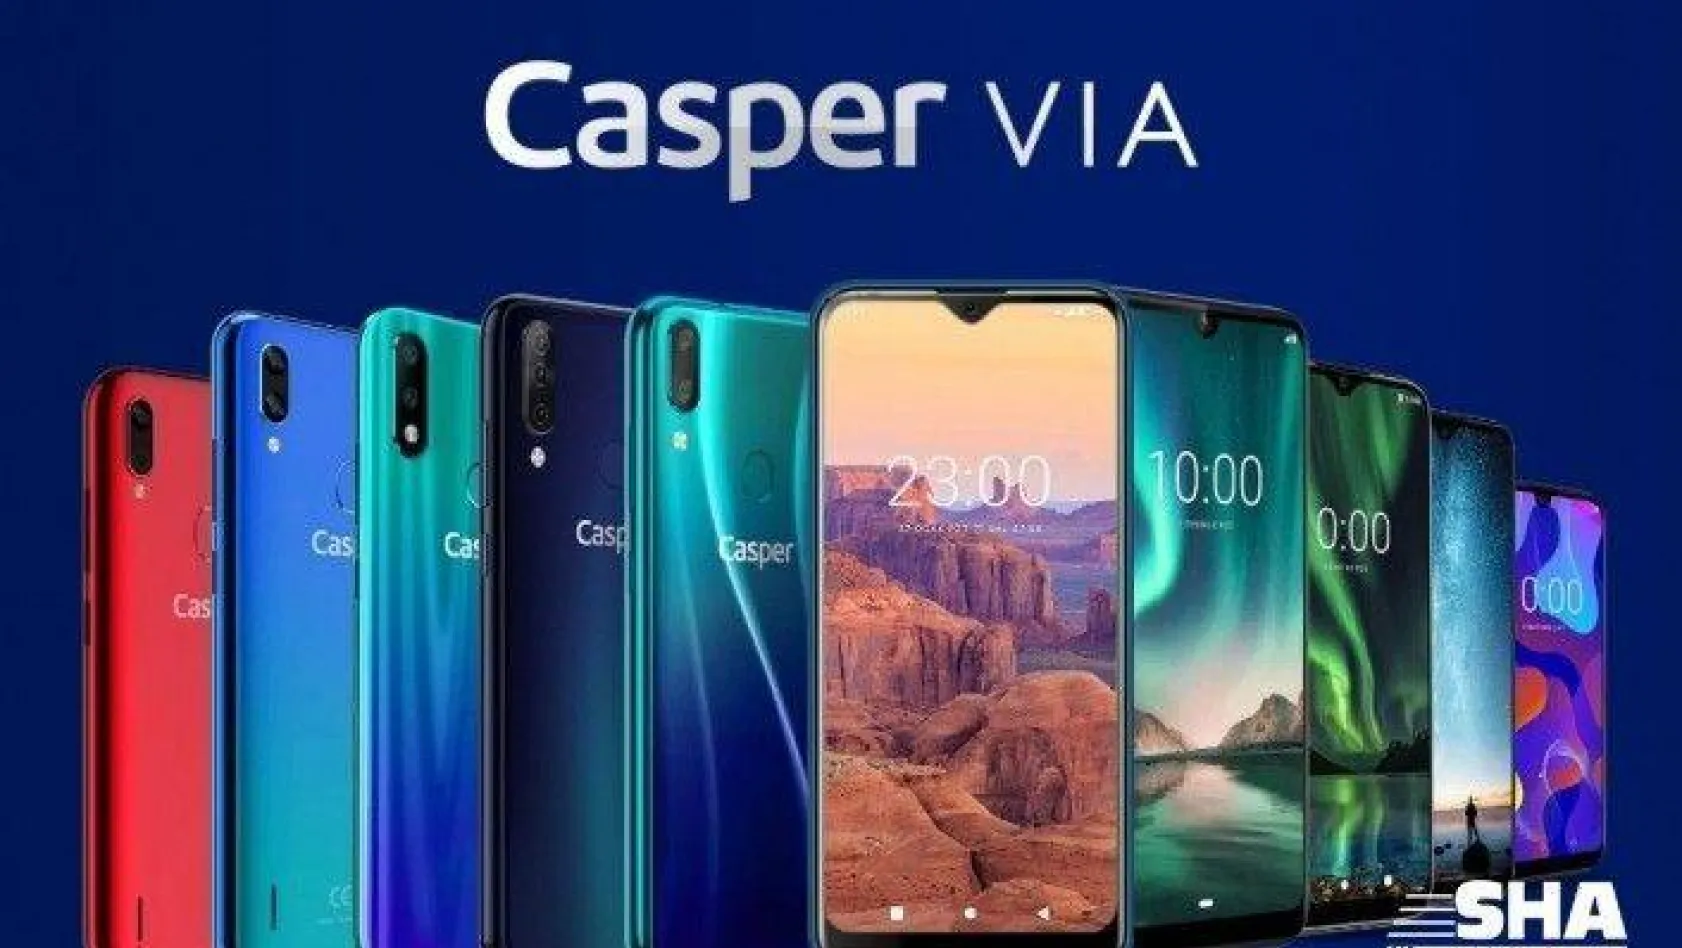 Casper VIA cep telefonlarında bahar kampanyası